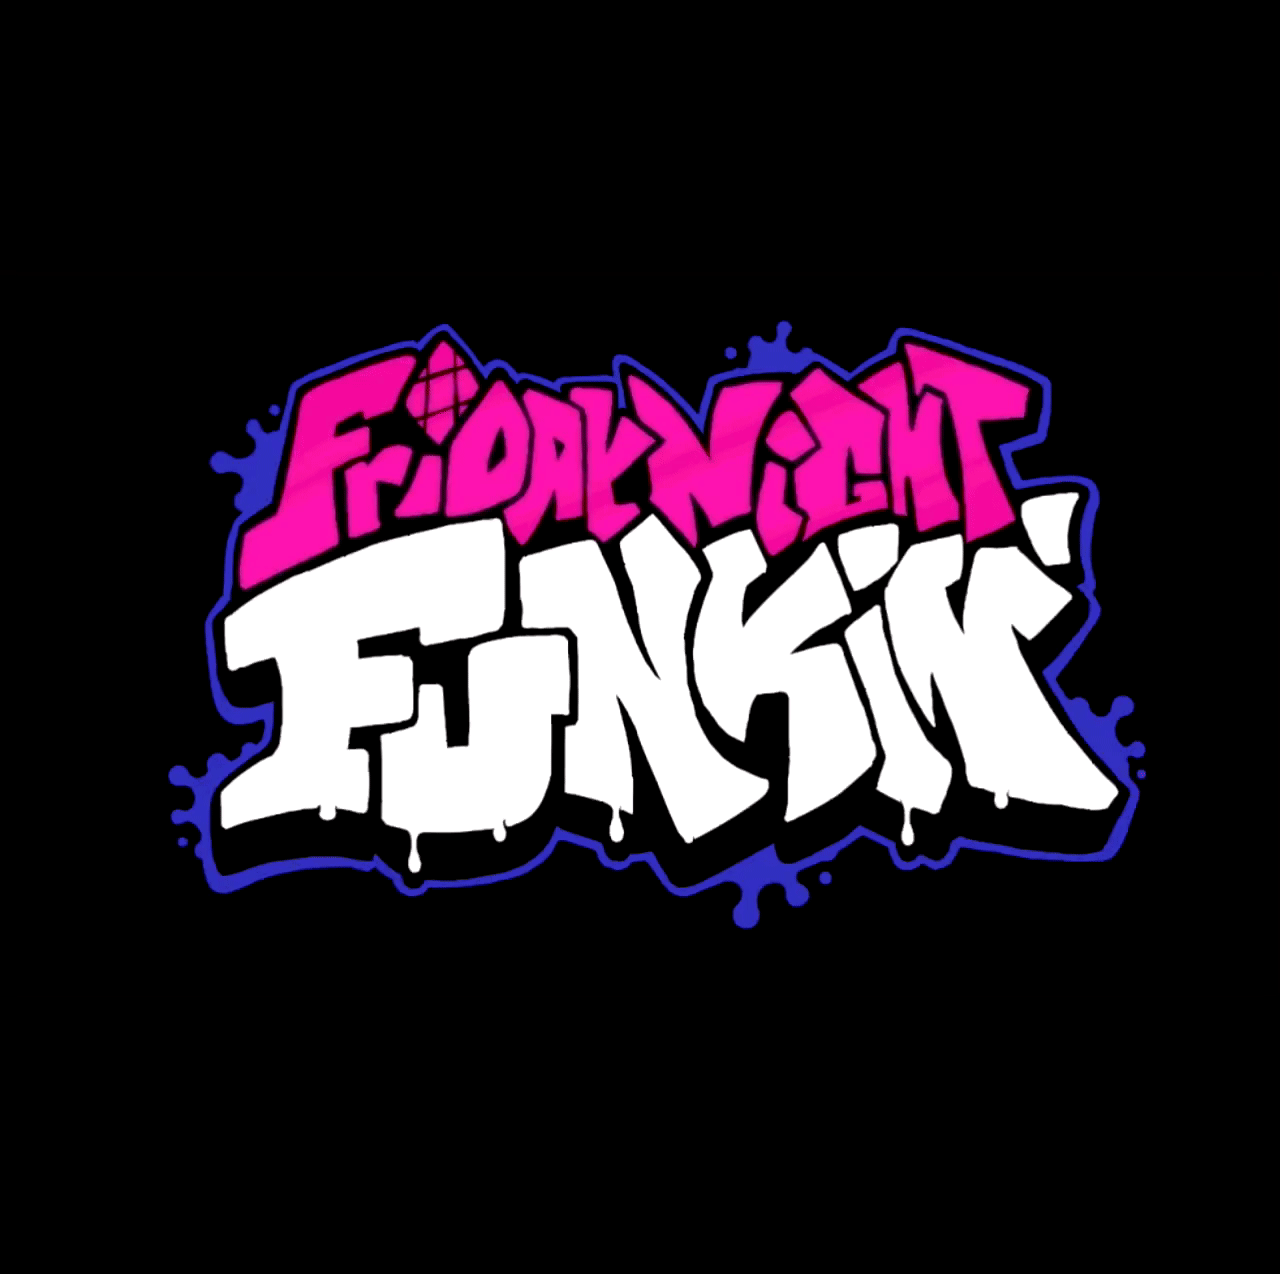 Fnf script. Friday Night Funkin' (ninjamuffin99, mikeyfridaynightfunkin). FNF игра Friday Night Funkin. Фридей Найт Фанкин Нео. Friday Night Funkin Neo Mod.